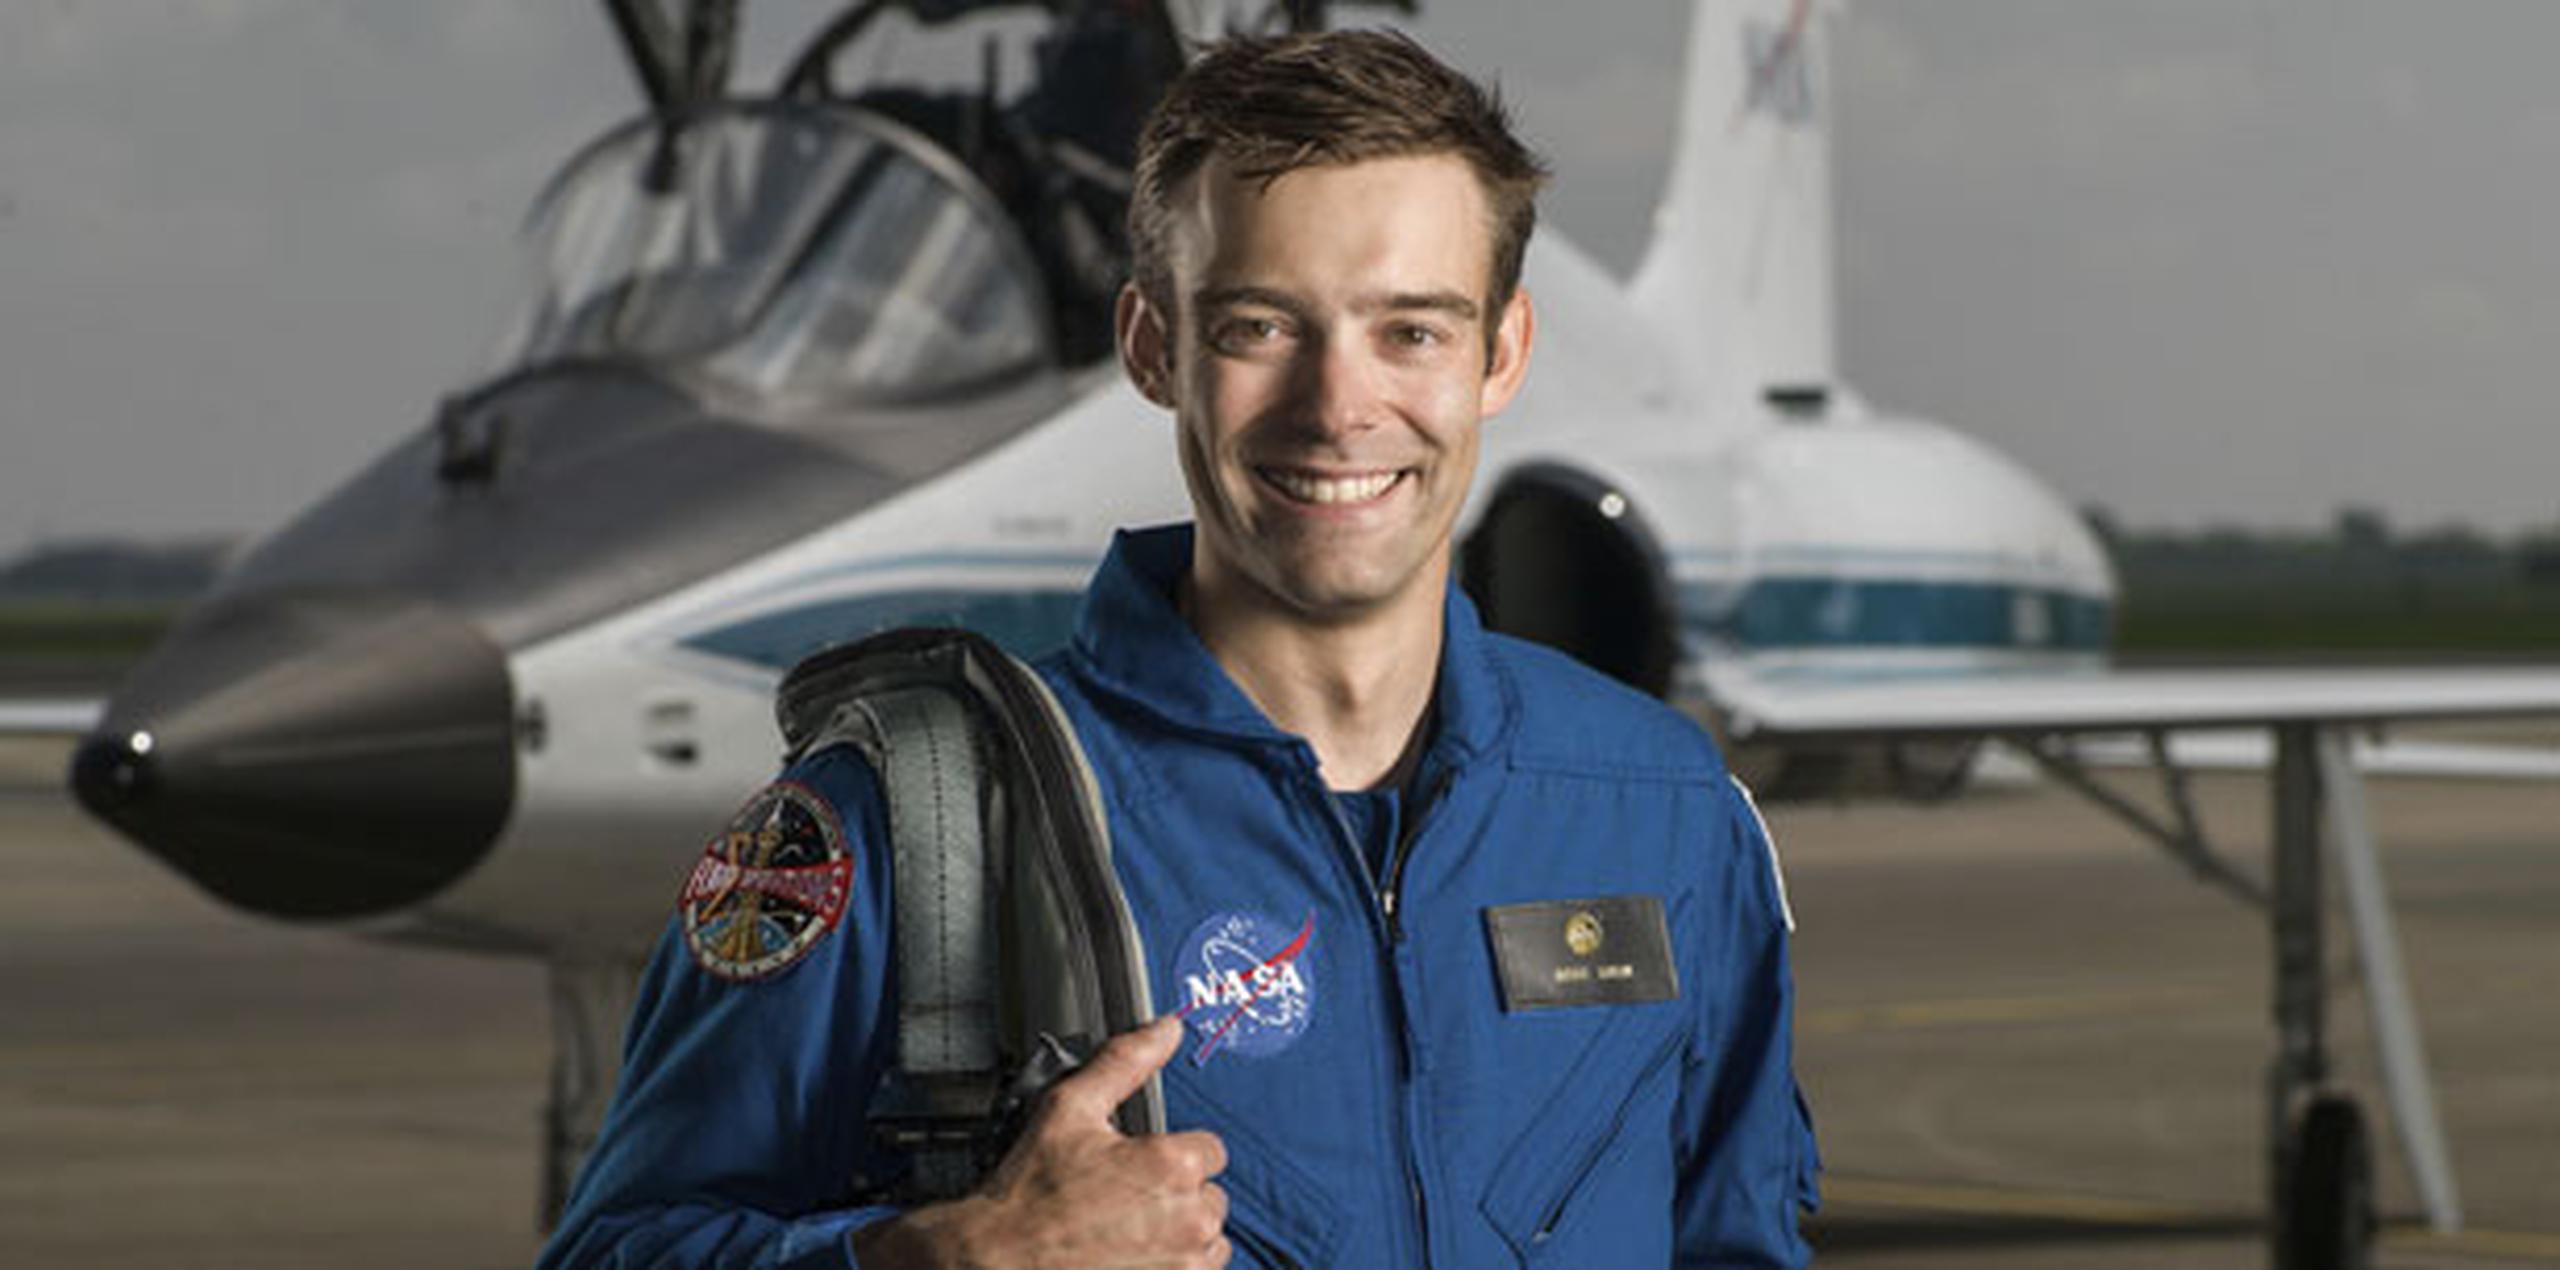 Kulin, de 34 años, era uno de los 12 nuevos aspirantes a astronautas seleccionados durante el verano pasado de entre 18,300 interesados. (AP)